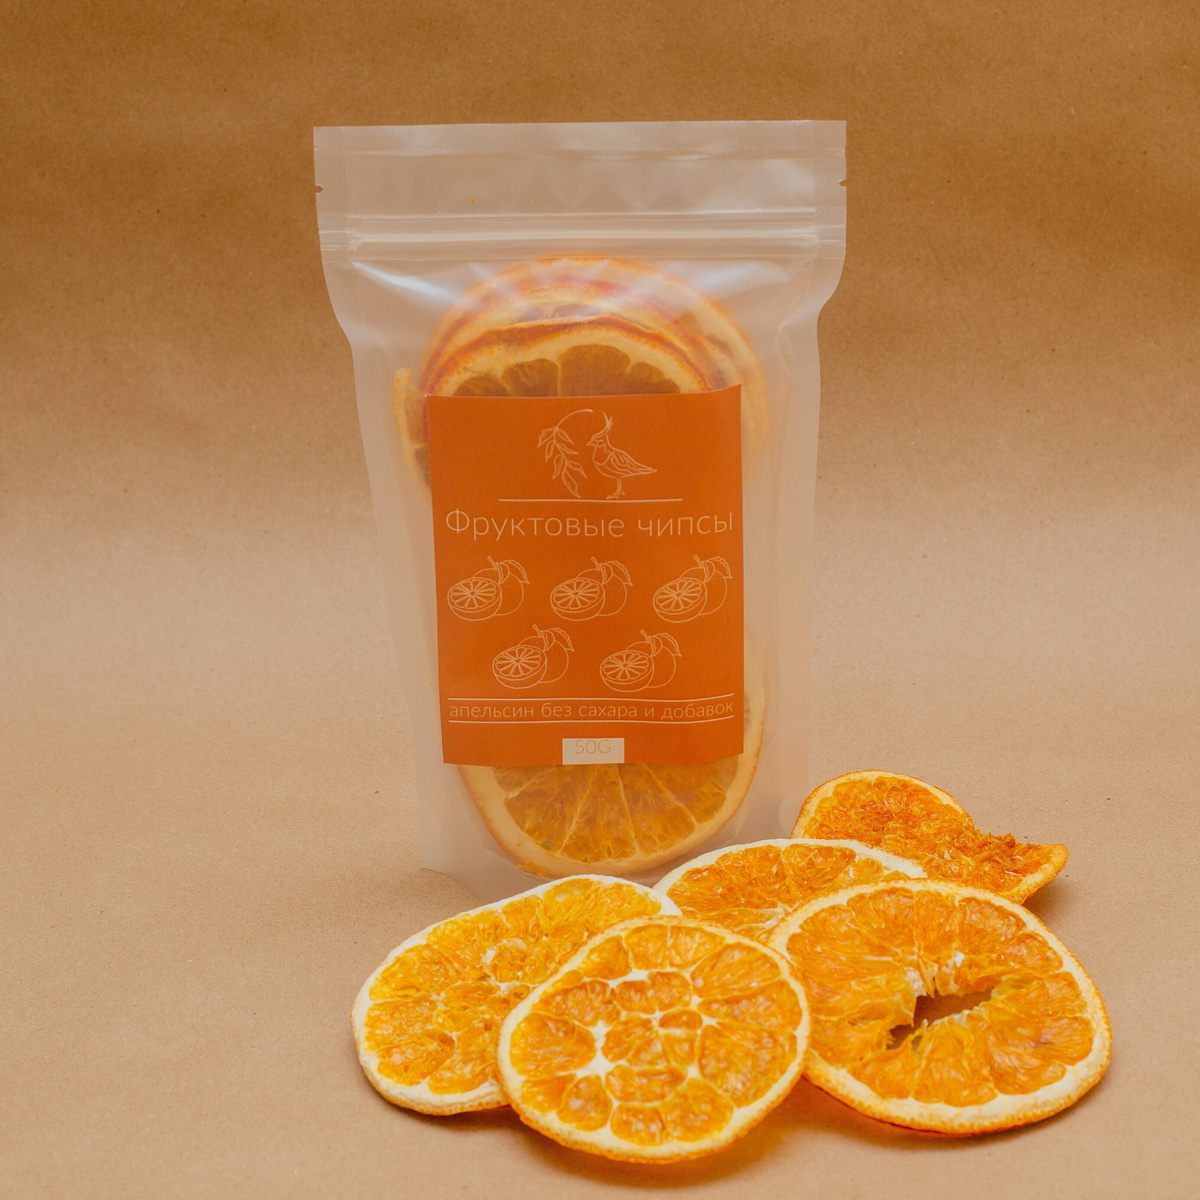 Чибис / Апельсин: фруктовые чипсы / 50г, Сушеный, натуральный, вяленый, без сахара, без добавок  #1